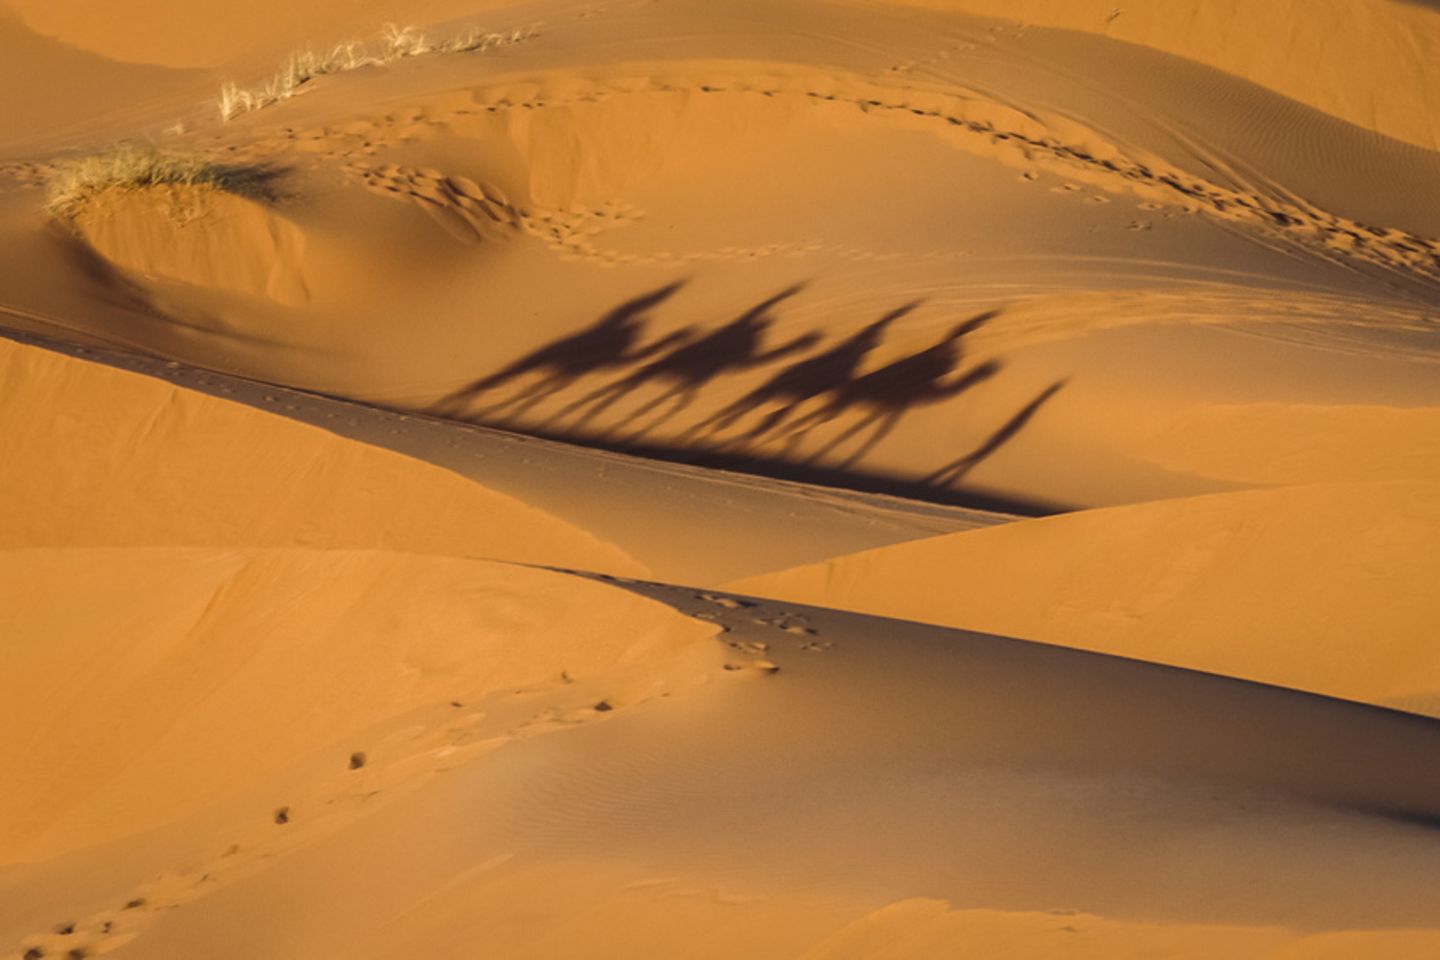 Fata Morgana in der Wüste